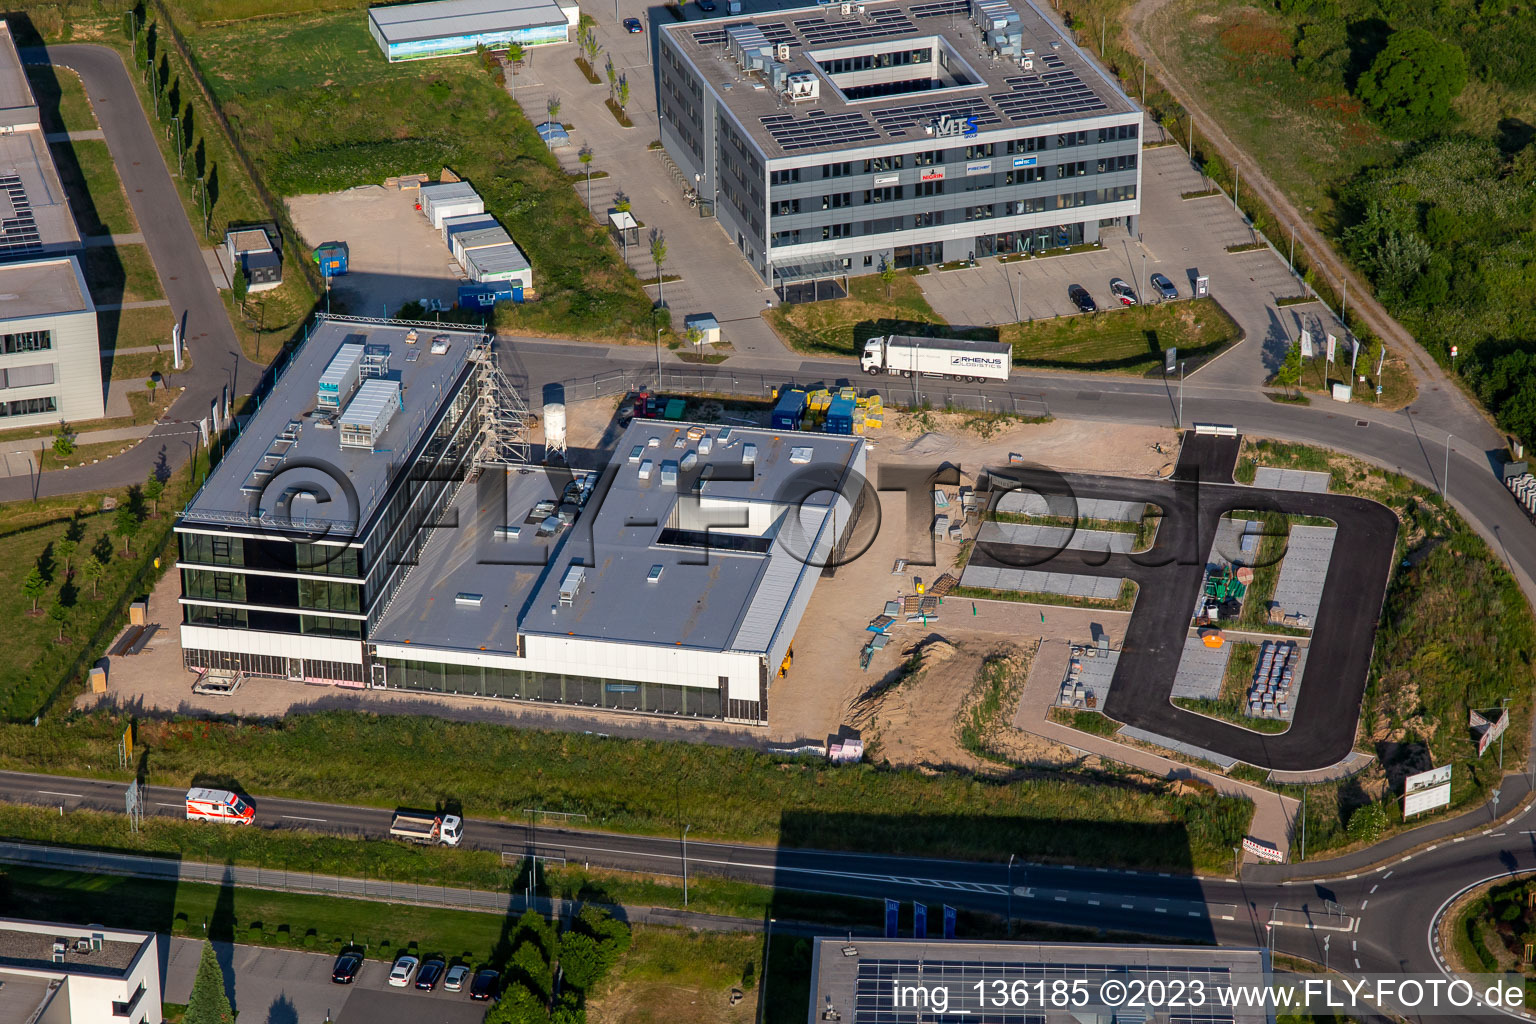 Luftbild von Kardex Software GmbH in Rülzheim im Bundesland Rheinland-Pfalz, Deutschland